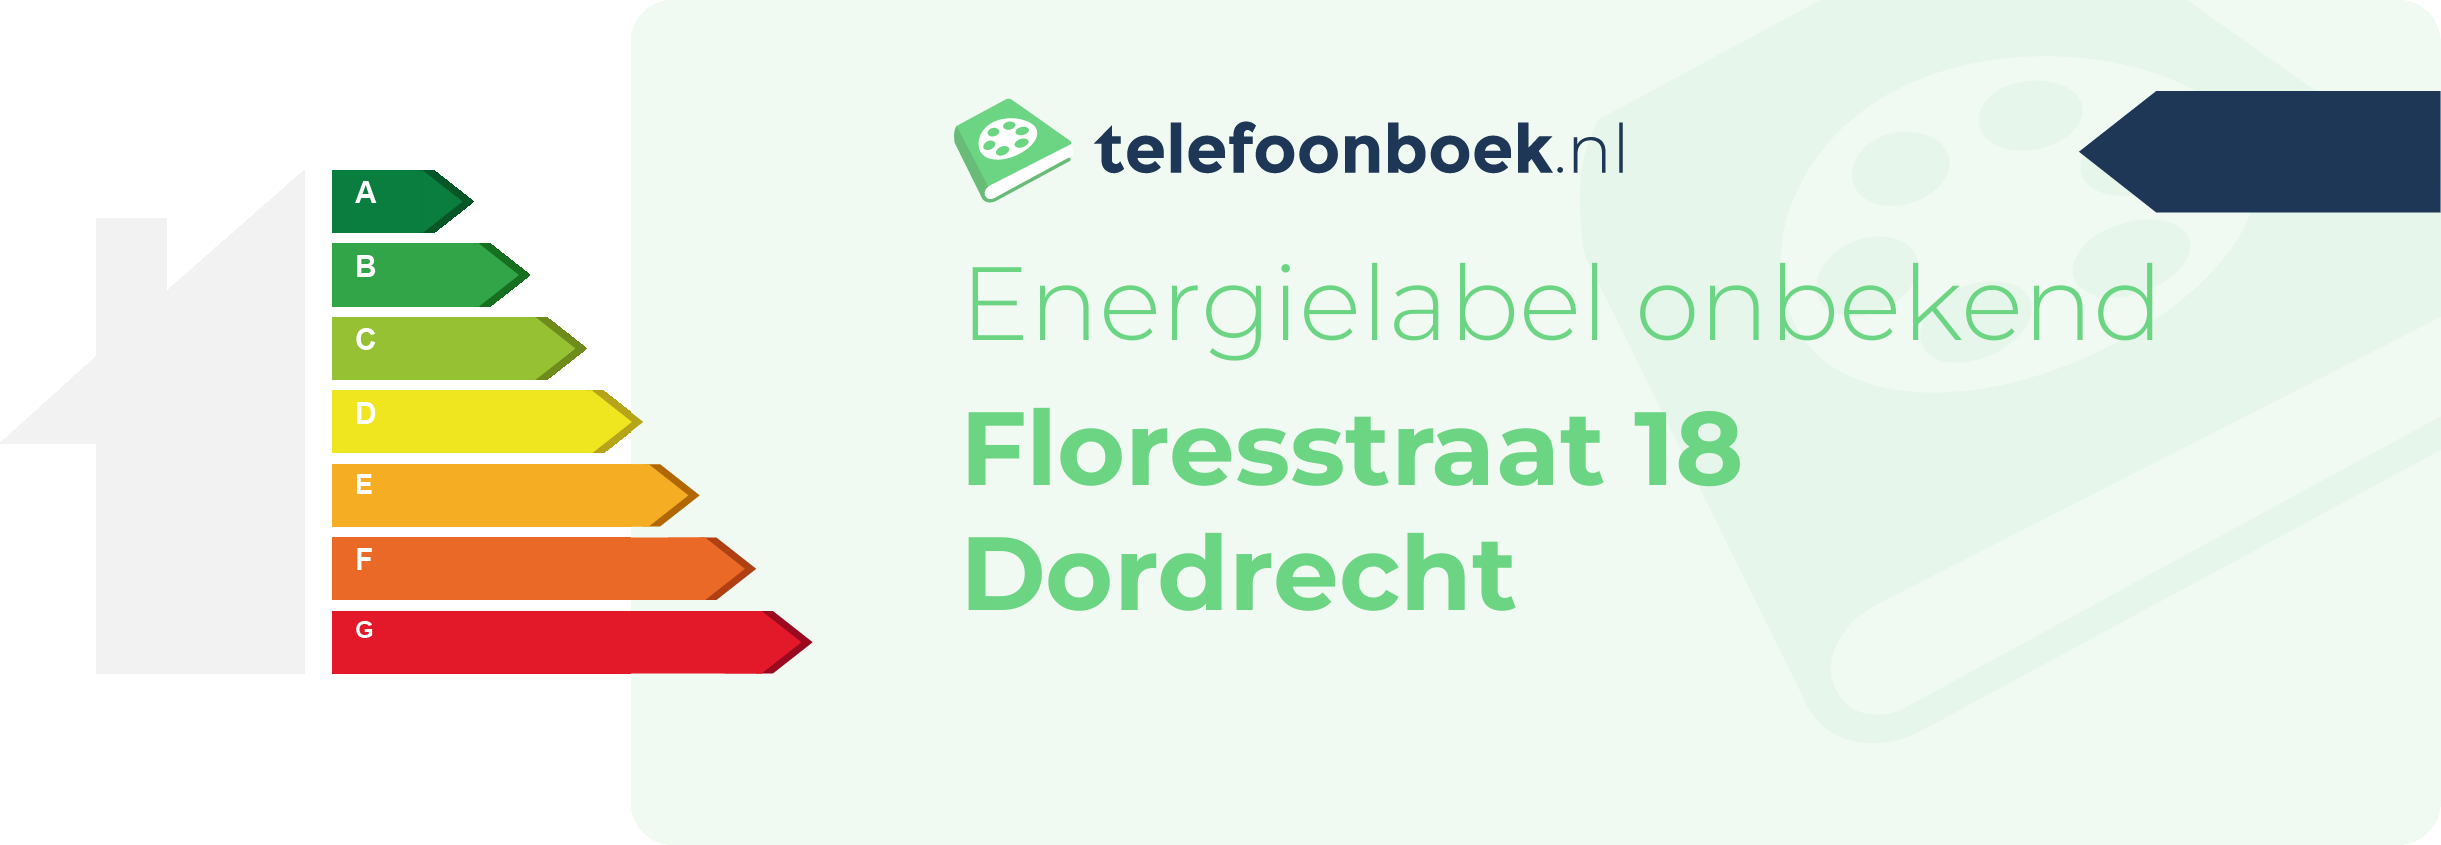 Energielabel Floresstraat 18 Dordrecht